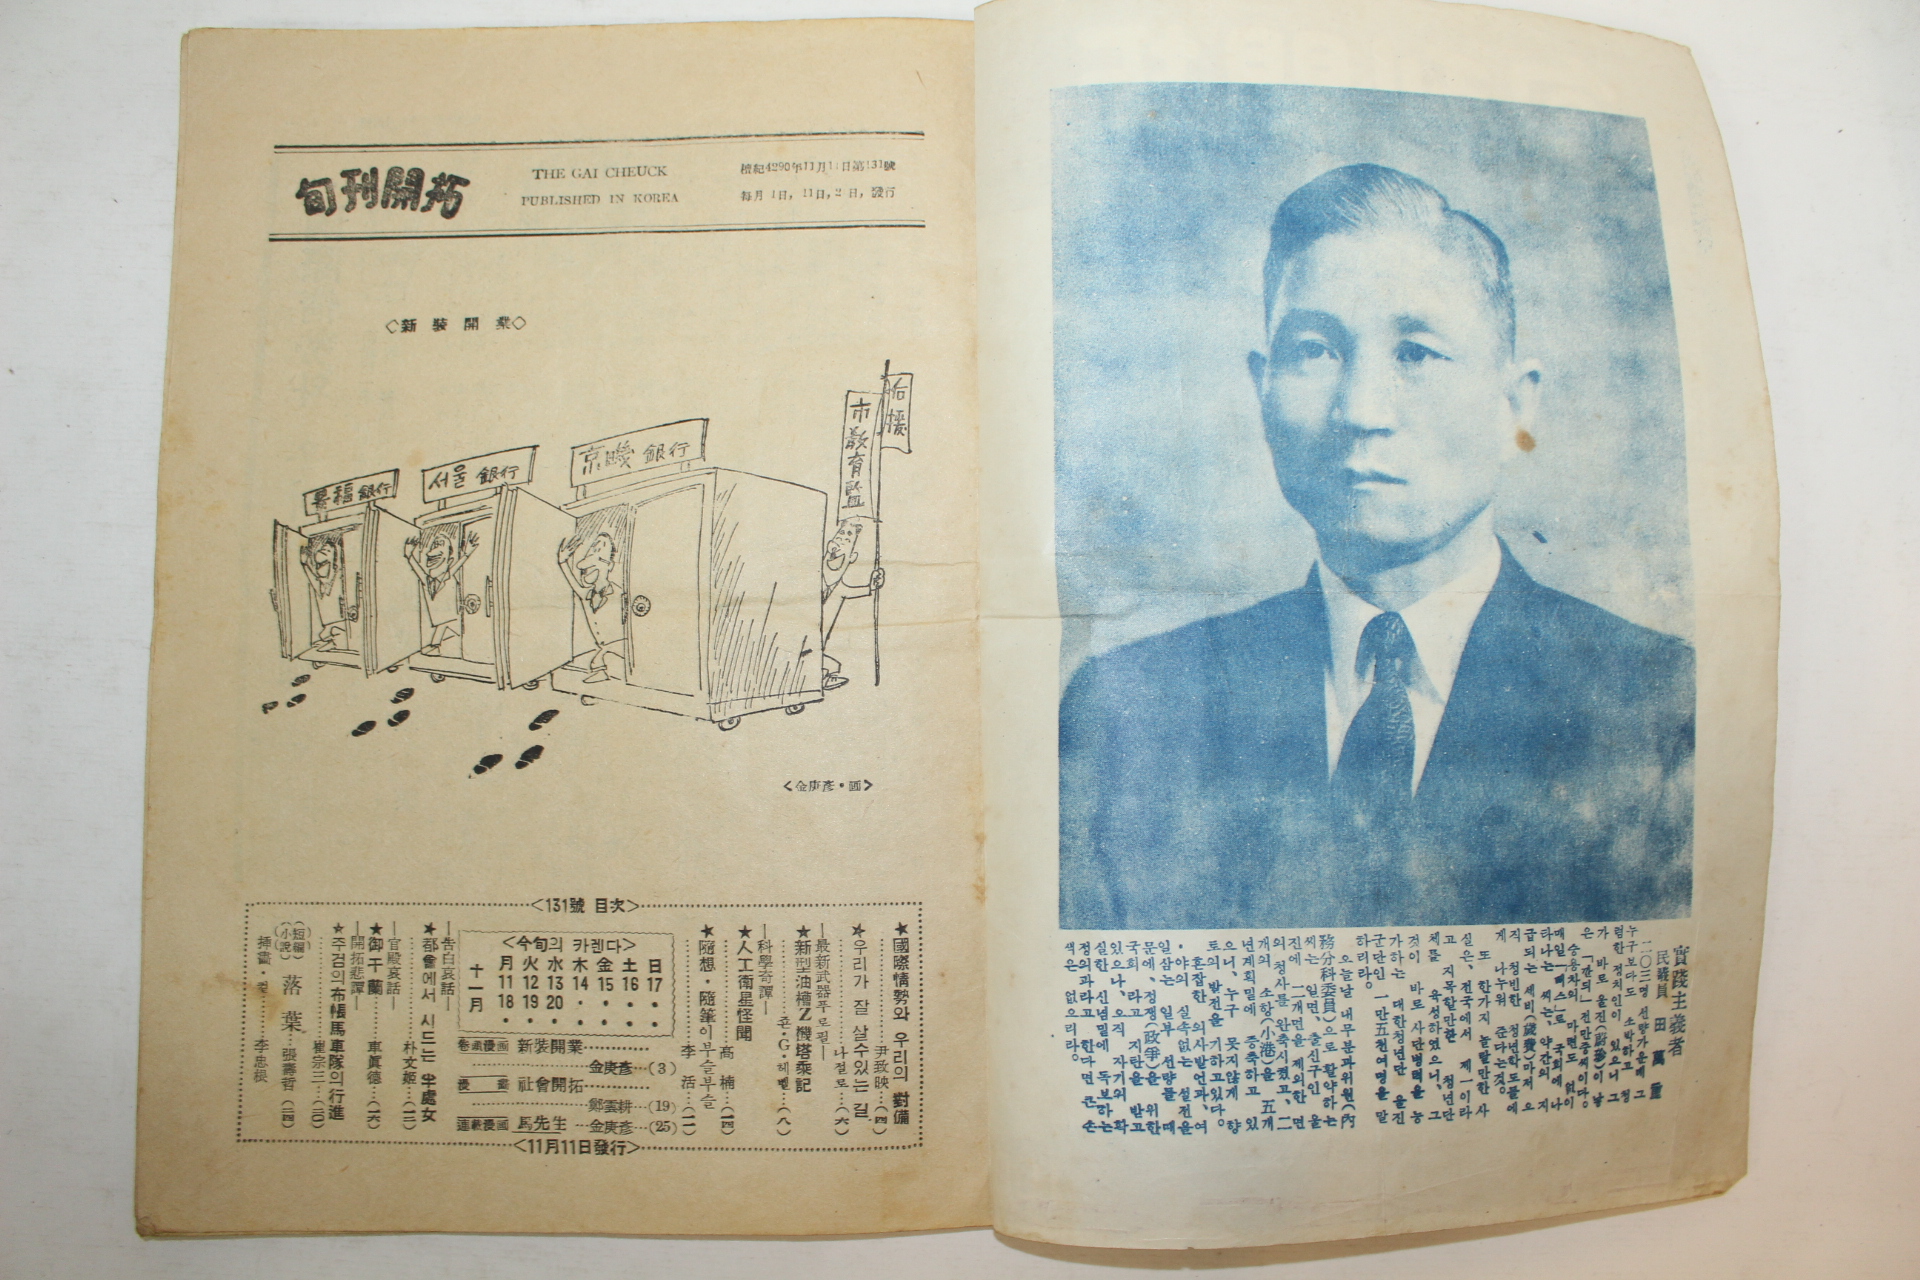 1957년 순간개척(旬刊開拓) 11월11일